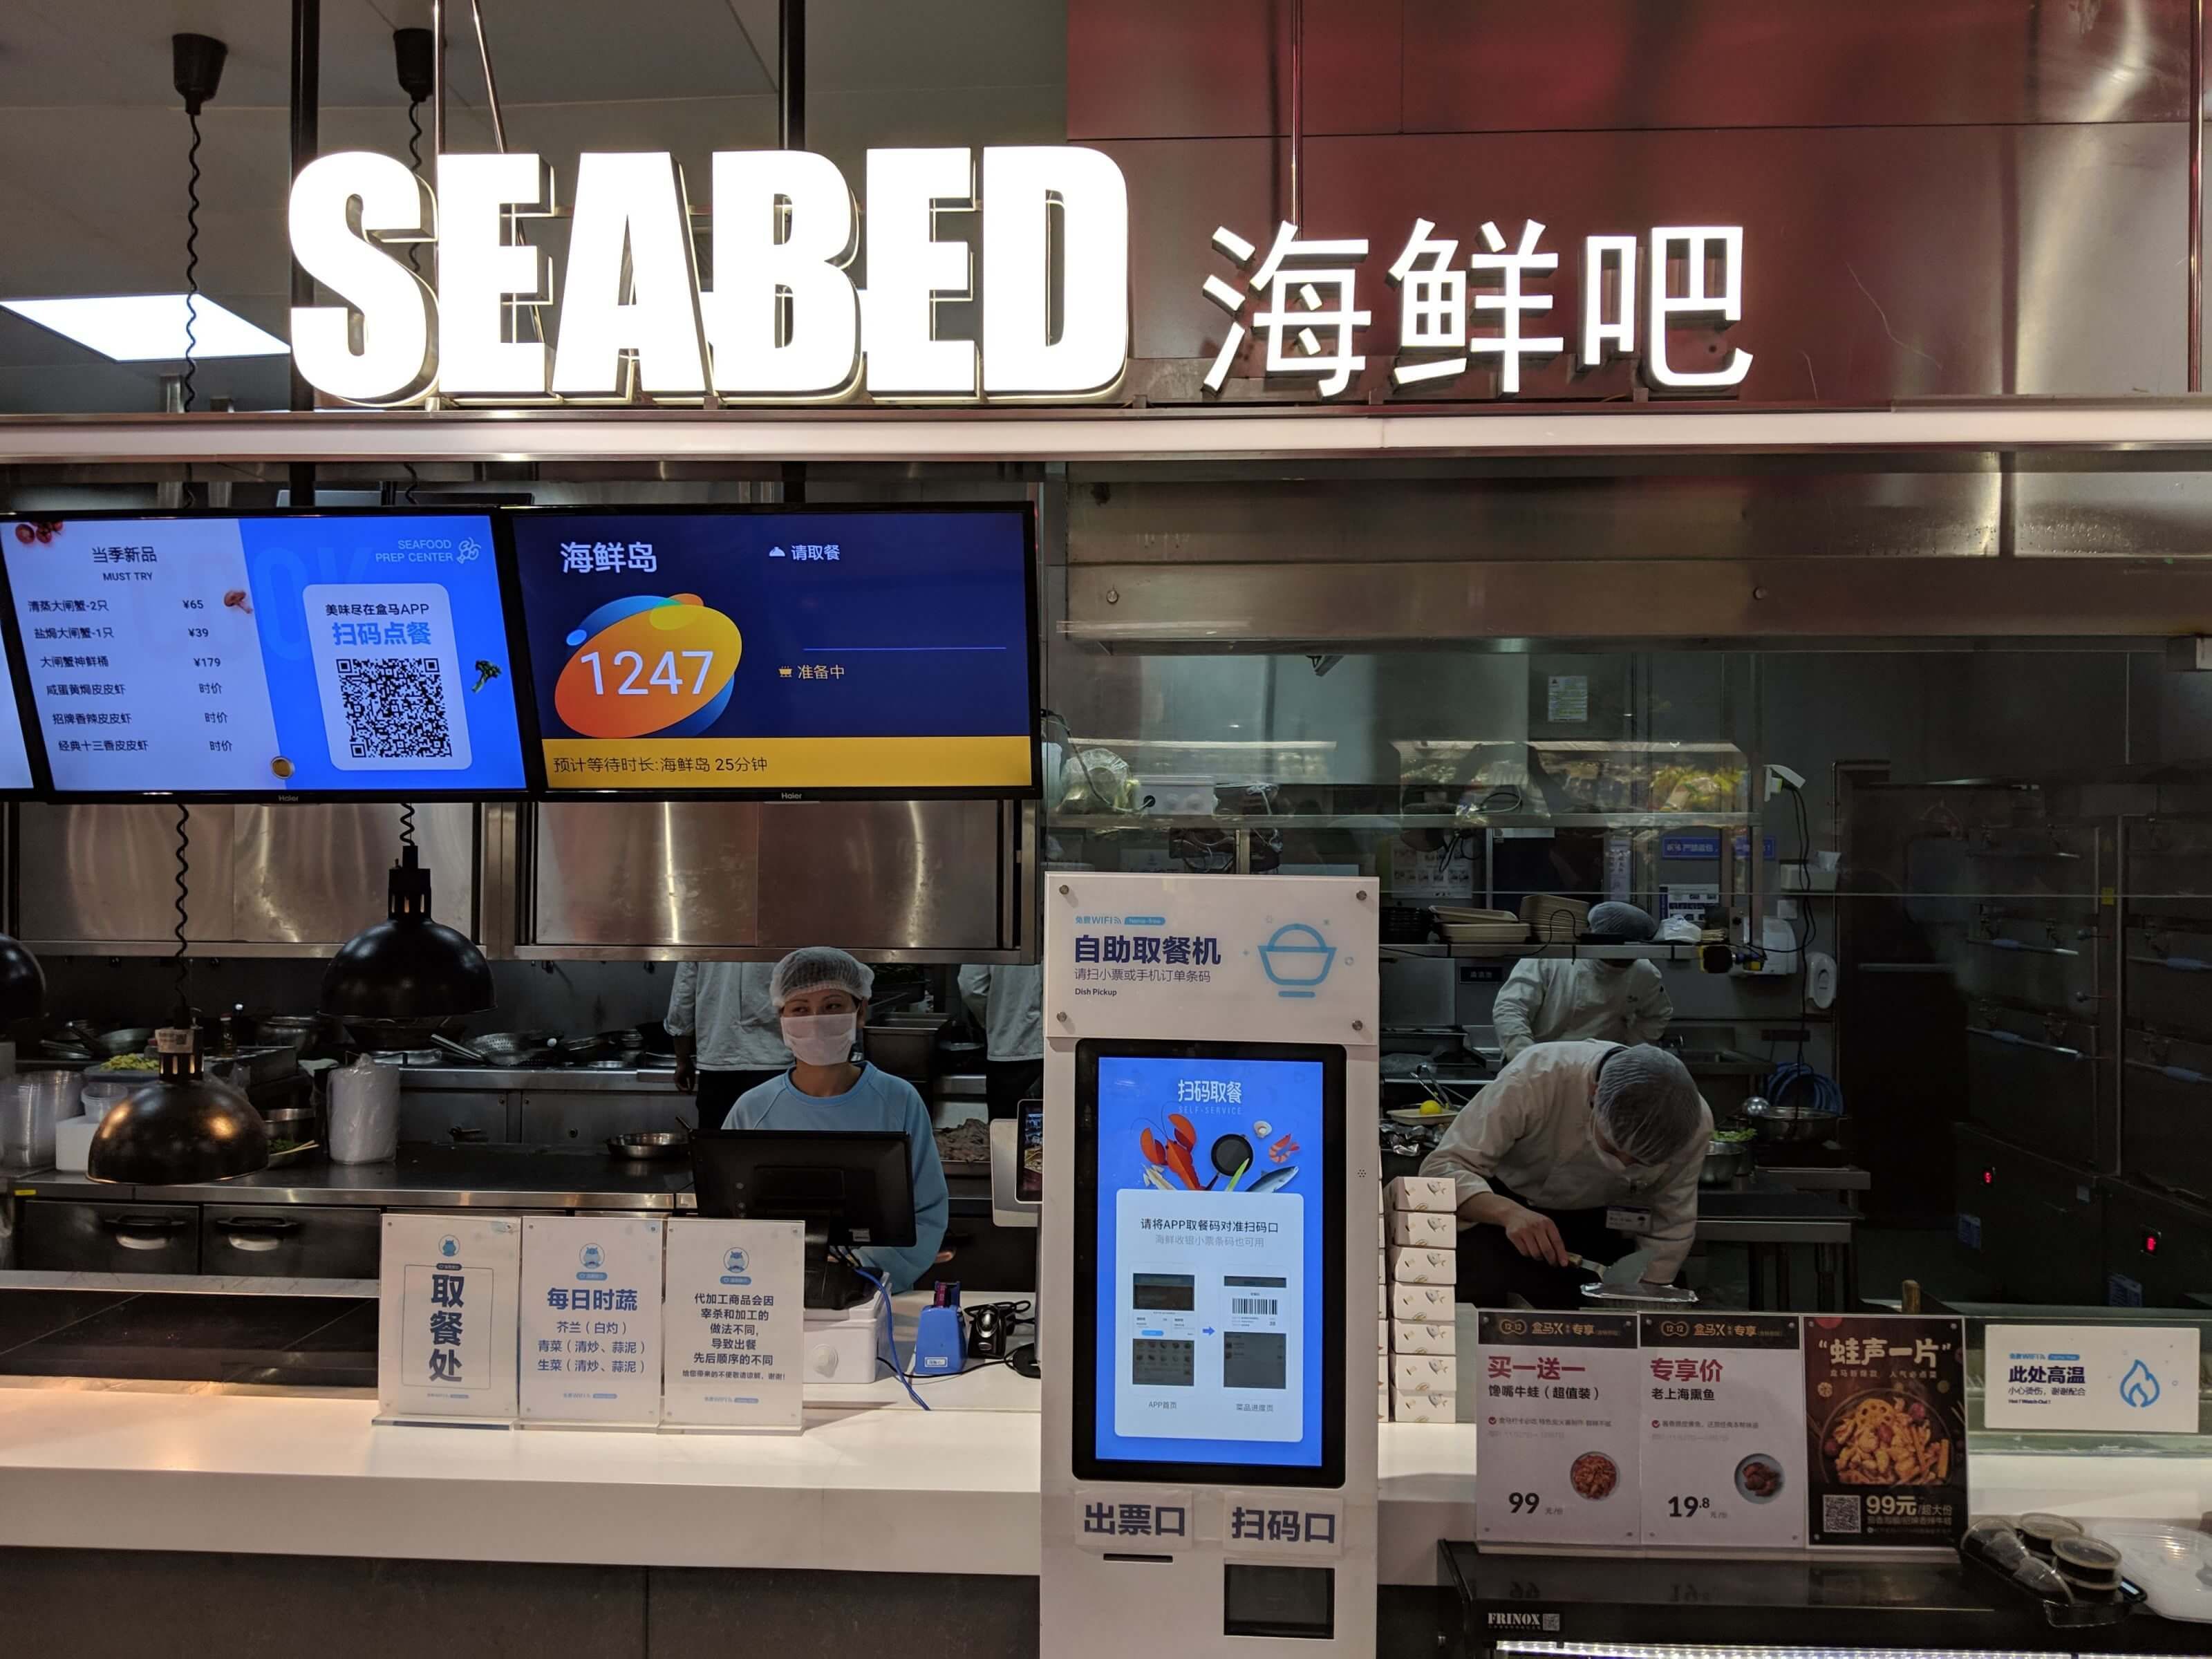 Fastfood Restaurant in China mit innovativem Konzept